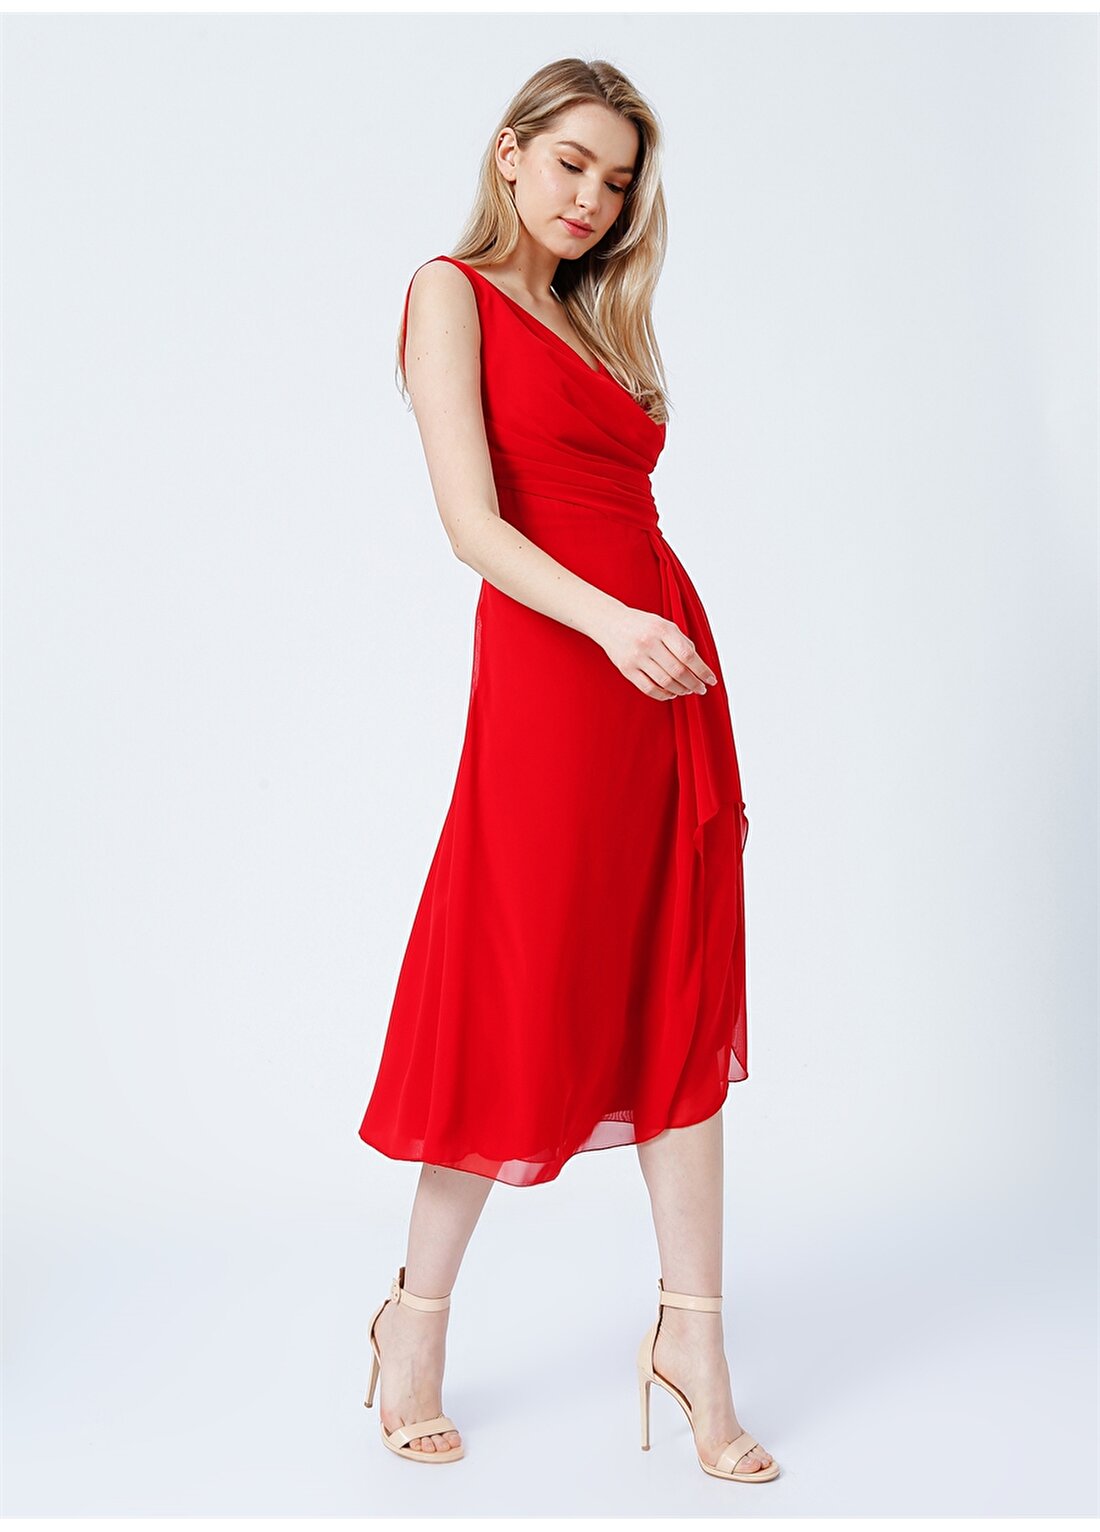 Selen 22YSL7161 Kruvaze Yaka Standart Kalıp Düz Kırmızı Kadın Elbise